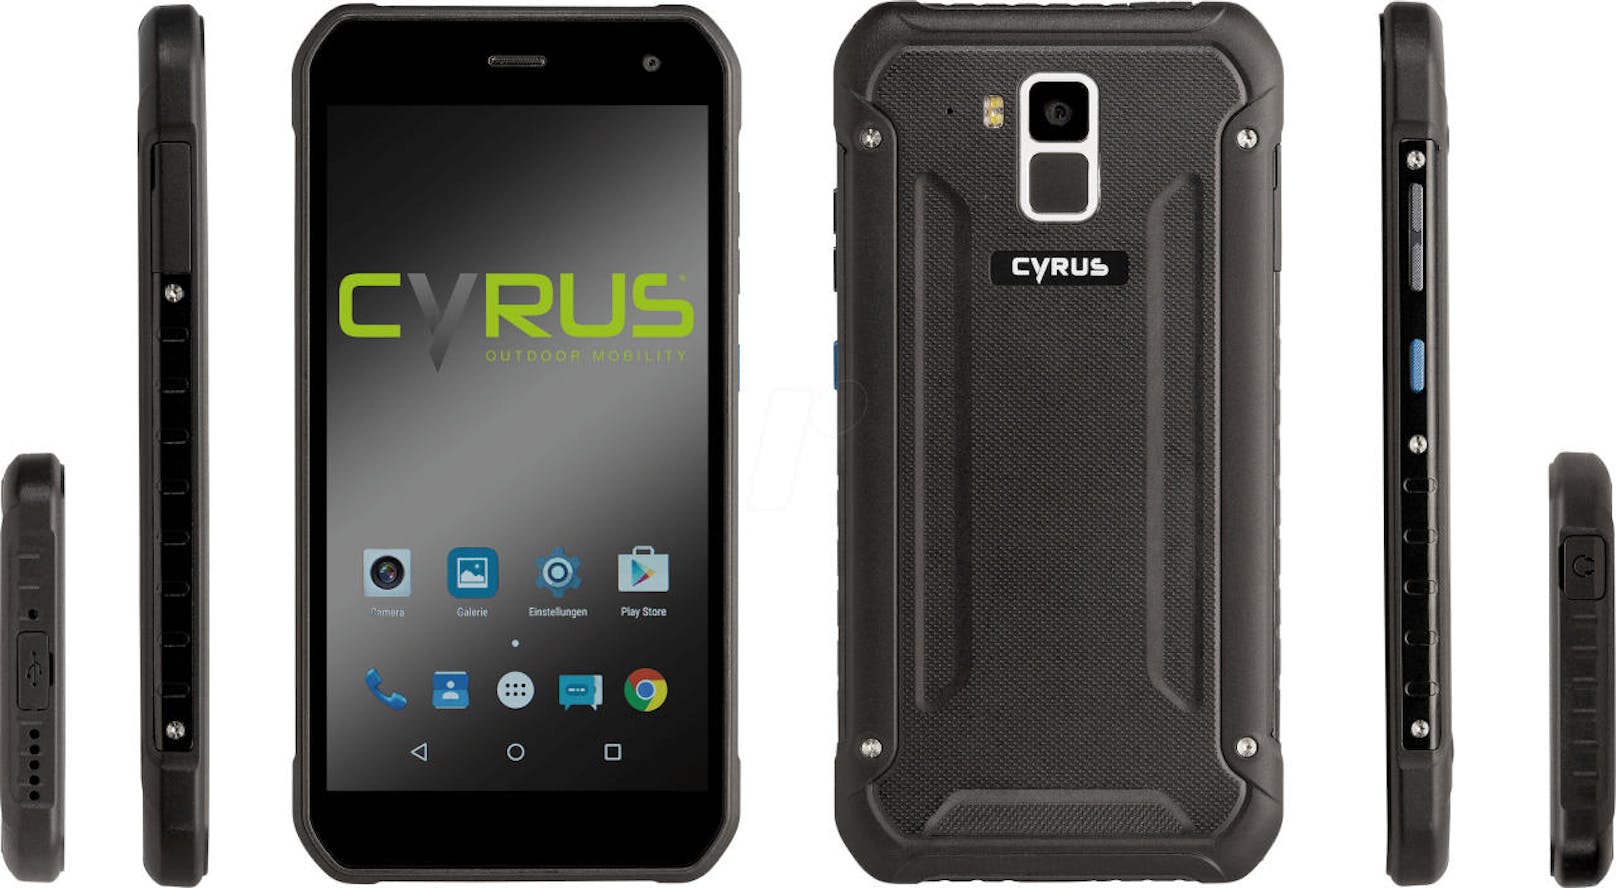 <b>Cyrus CS 40:</b> Gorilla-Glas 3, Multitouch HD Display, sturzgeschützt und wasserdicht. Daneben Standard:  Bluetooth 4.0, GPS Tracker, Taschenlampe, USB-C, Fingerprint sowie die 16 Megapixel Hauptkamera. Bereits um unter 300 Euro zu haben.